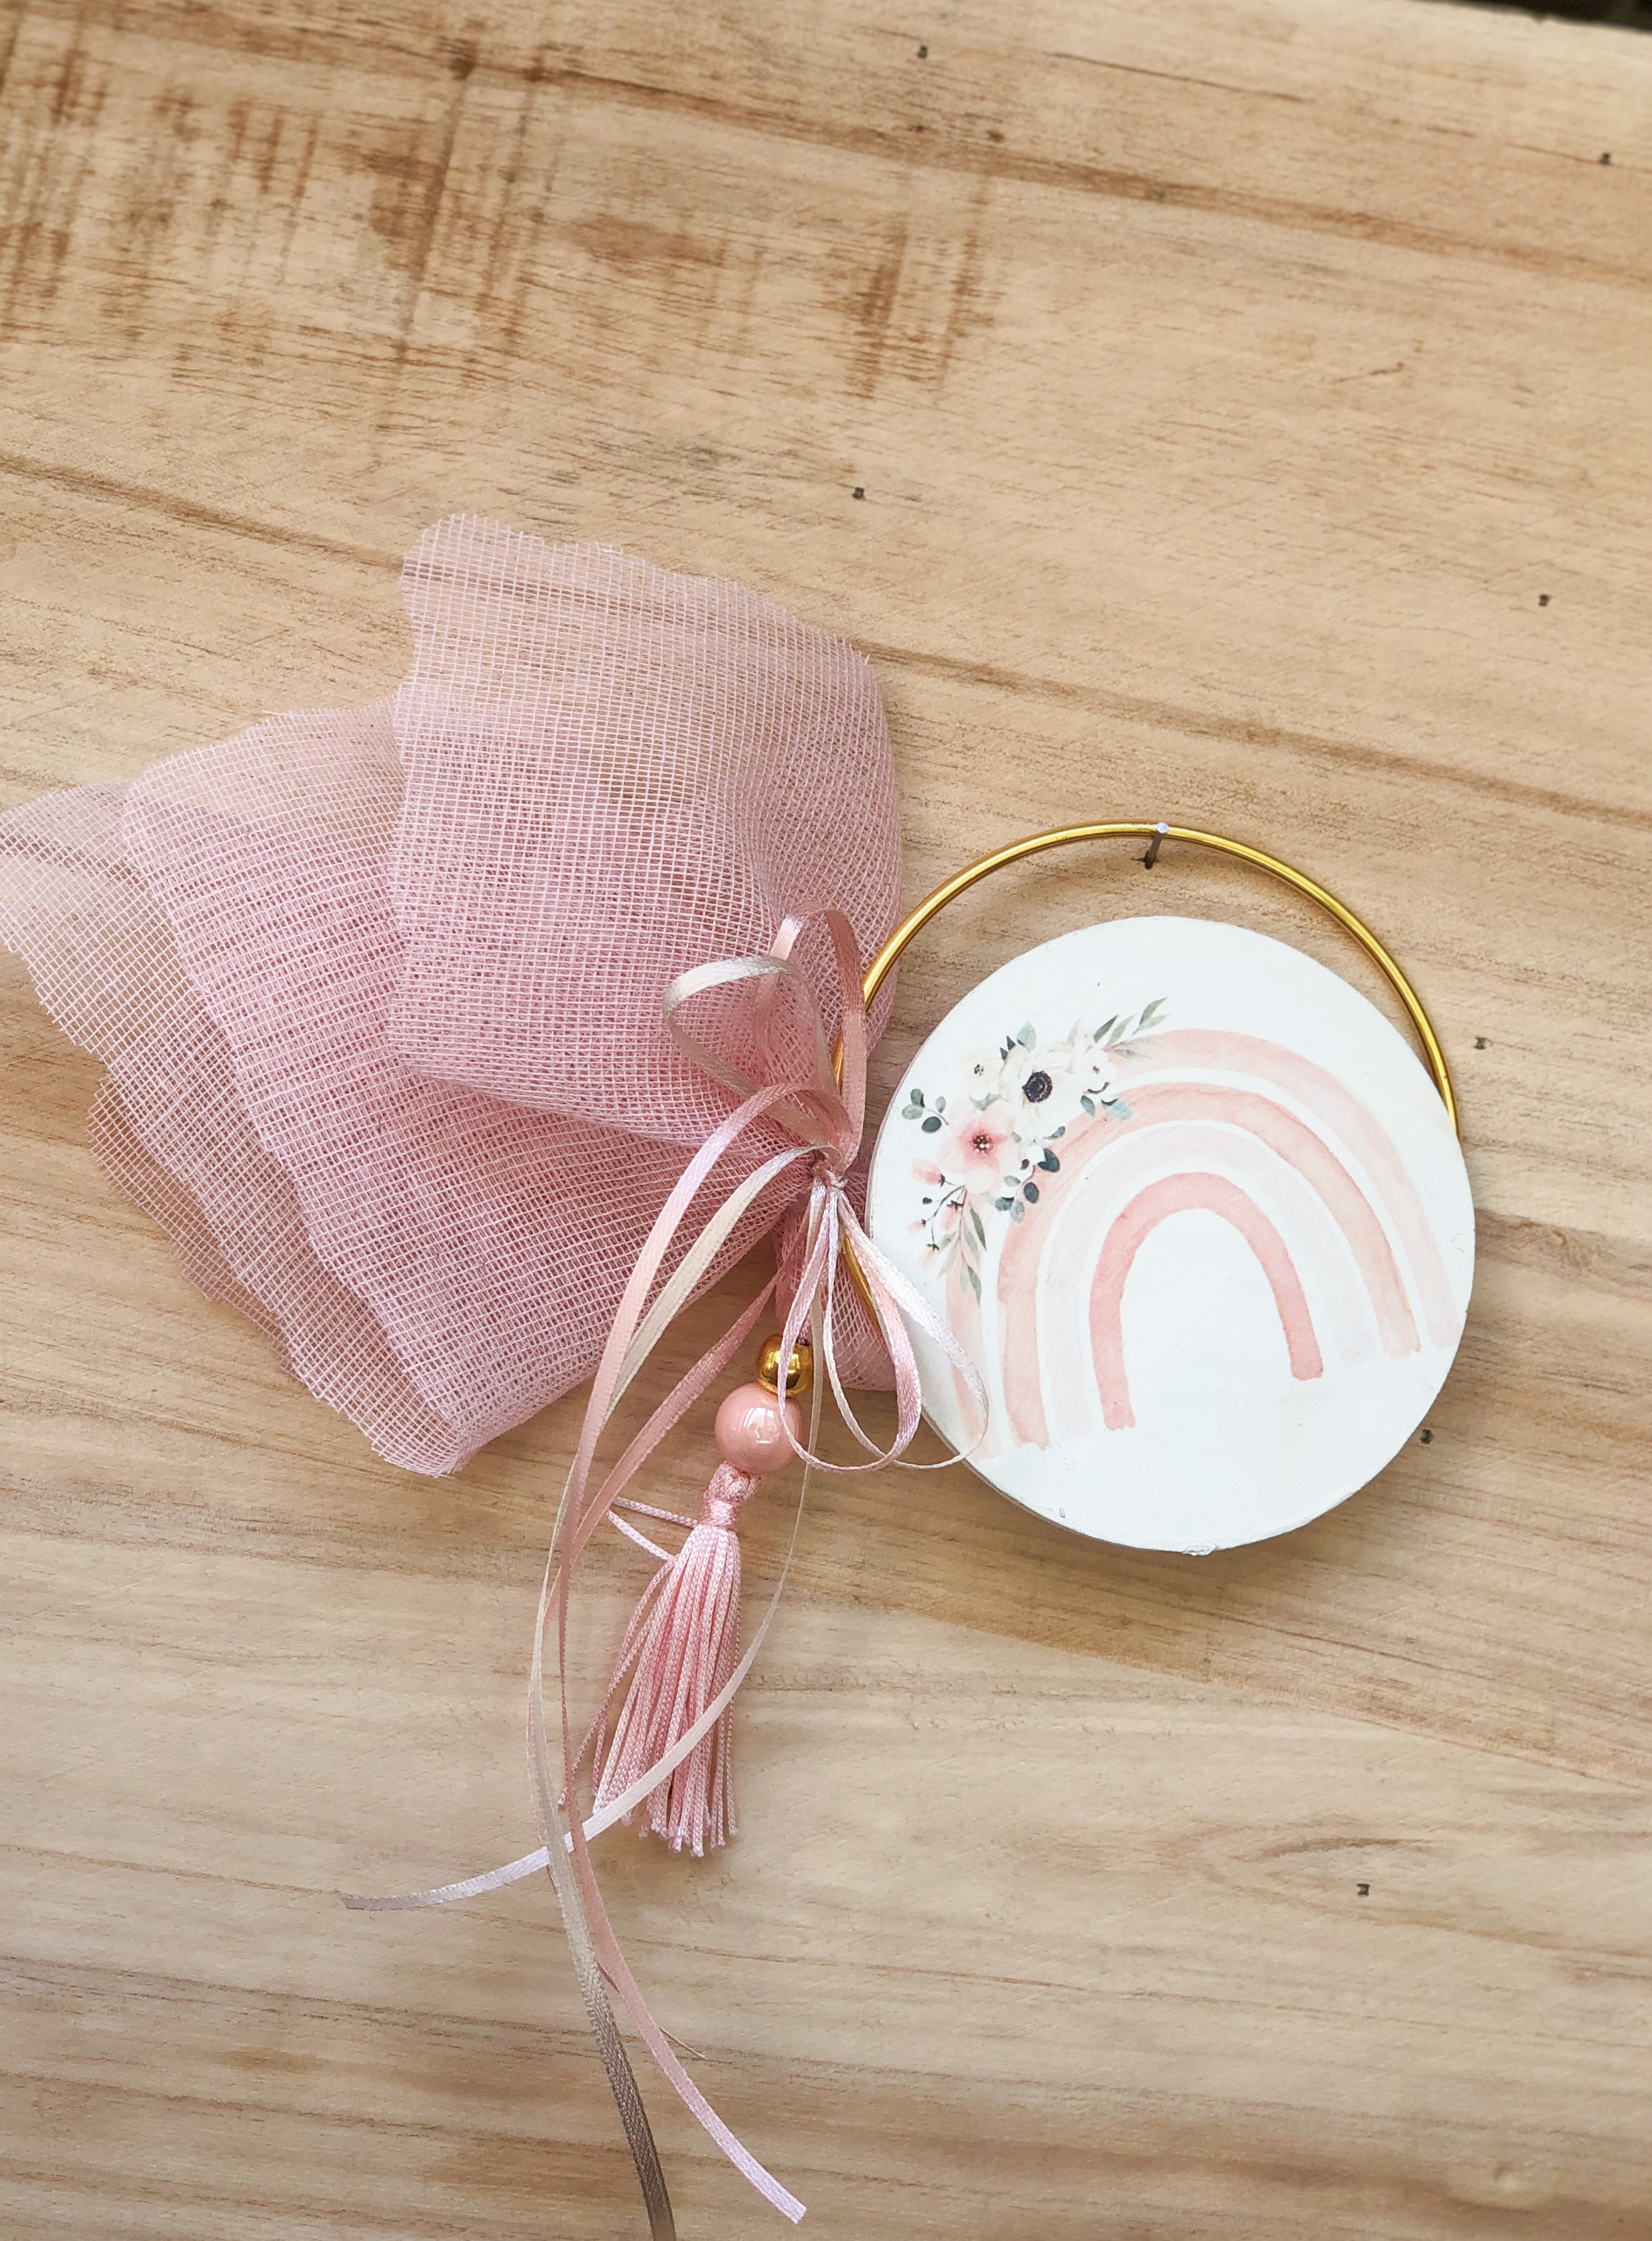 μπομπονιέρα προσκλητήριο θέμα ουράνιο τόξο ροζ κορίτσι φούντα πάπυρος περγαμηνή χρυσός κρίκος στεφάνι εκτυπωμένο ξύλο : 1